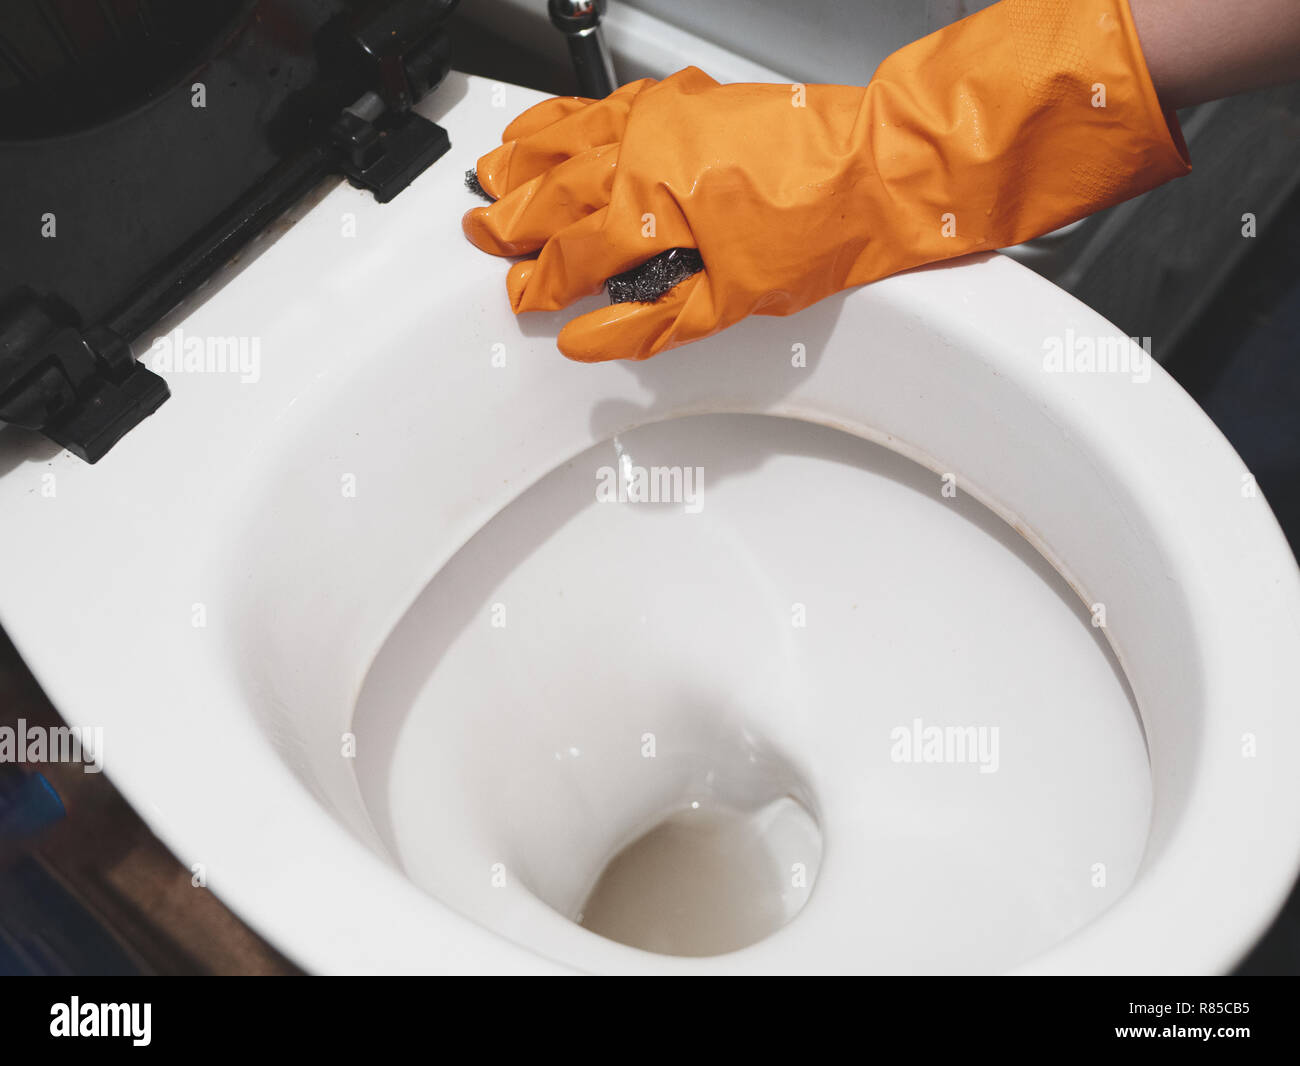 Lavoro sporco per i migranti illegali - pulizia WC. lavoro poco retribuito Foto Stock